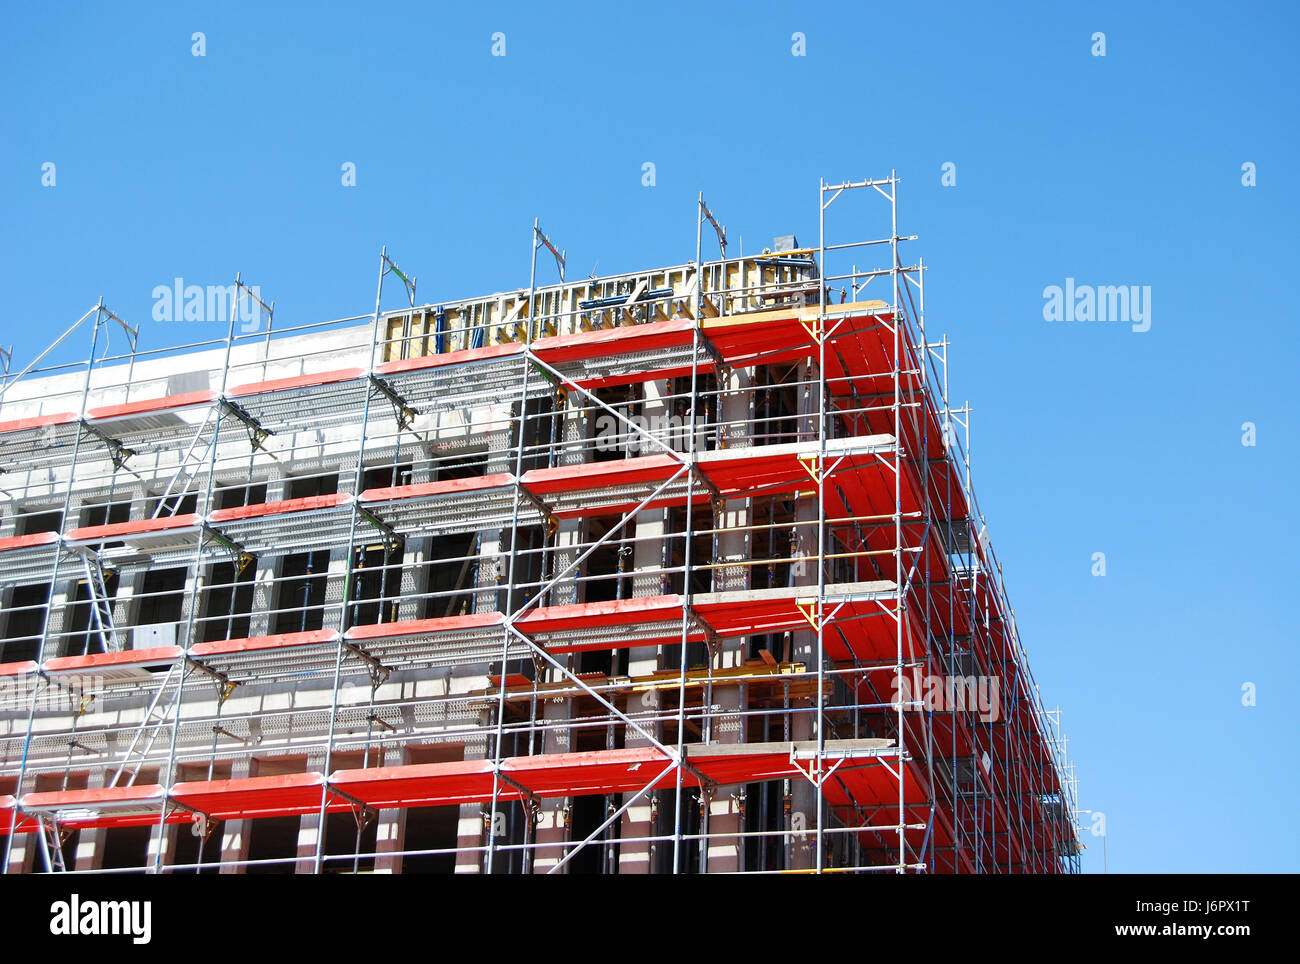 Hausbau am Arbeitsplatz Gerüst Gerüstbau Sanierung Betriebssicherheit Stockfoto